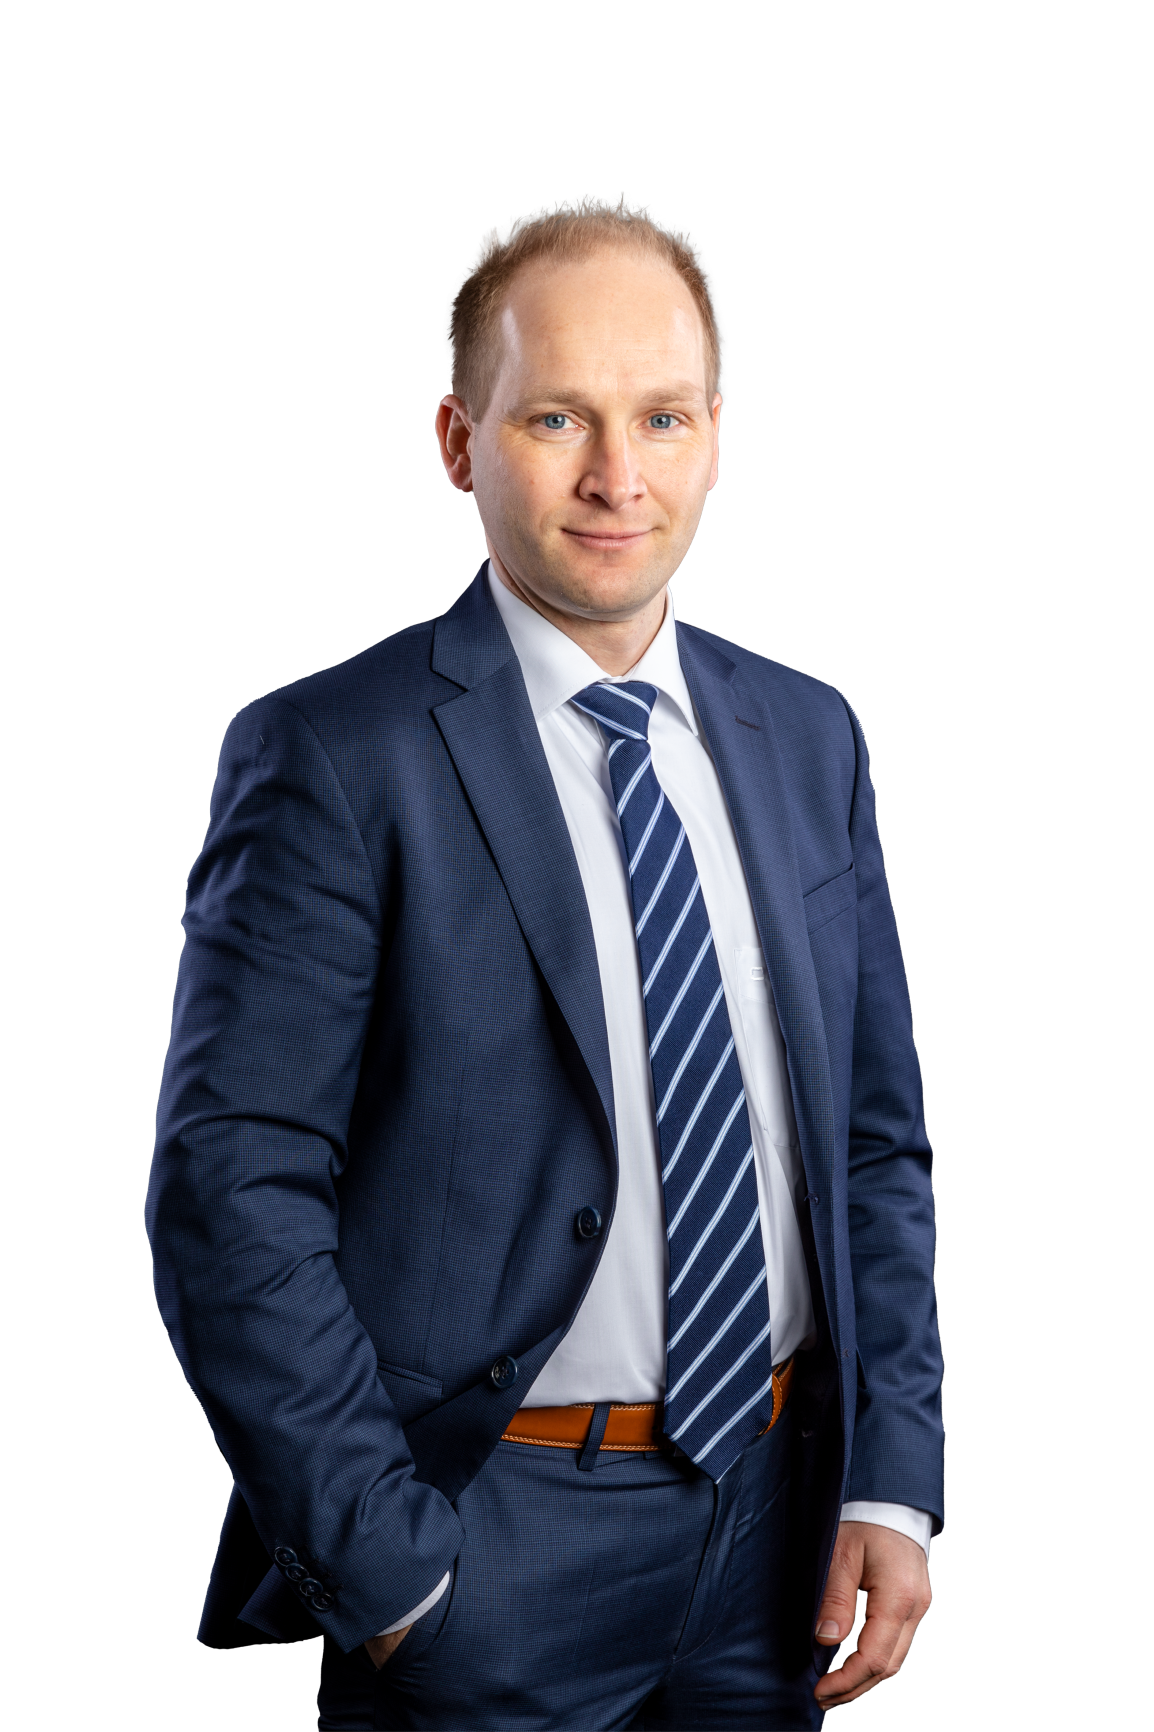 Rechtsanwalt Matthias Müller, Fachanwalt für Bau- und Architektenrecht, Fachanwalt für Miet- und Wohnungseigentumsrecht